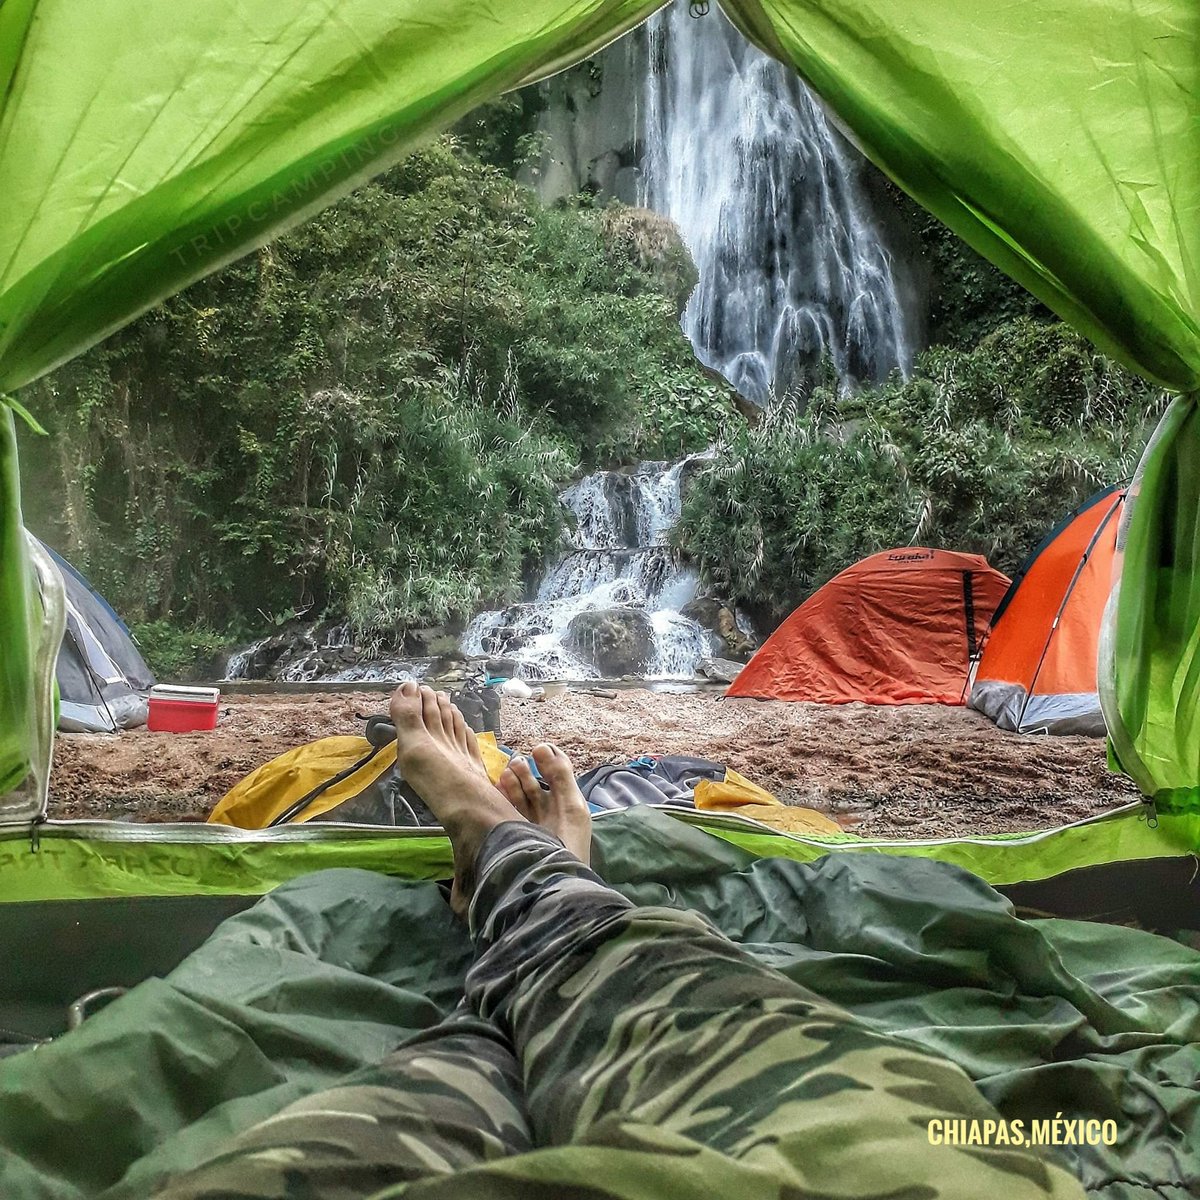 Mínimo una vez, tienes que darte la oportunidad de #amanecer frente una cascada e irte #camping por #Chiapas @bemexicodf @AlertaChiapas @TodoChiapas @Sectur_Chiapas